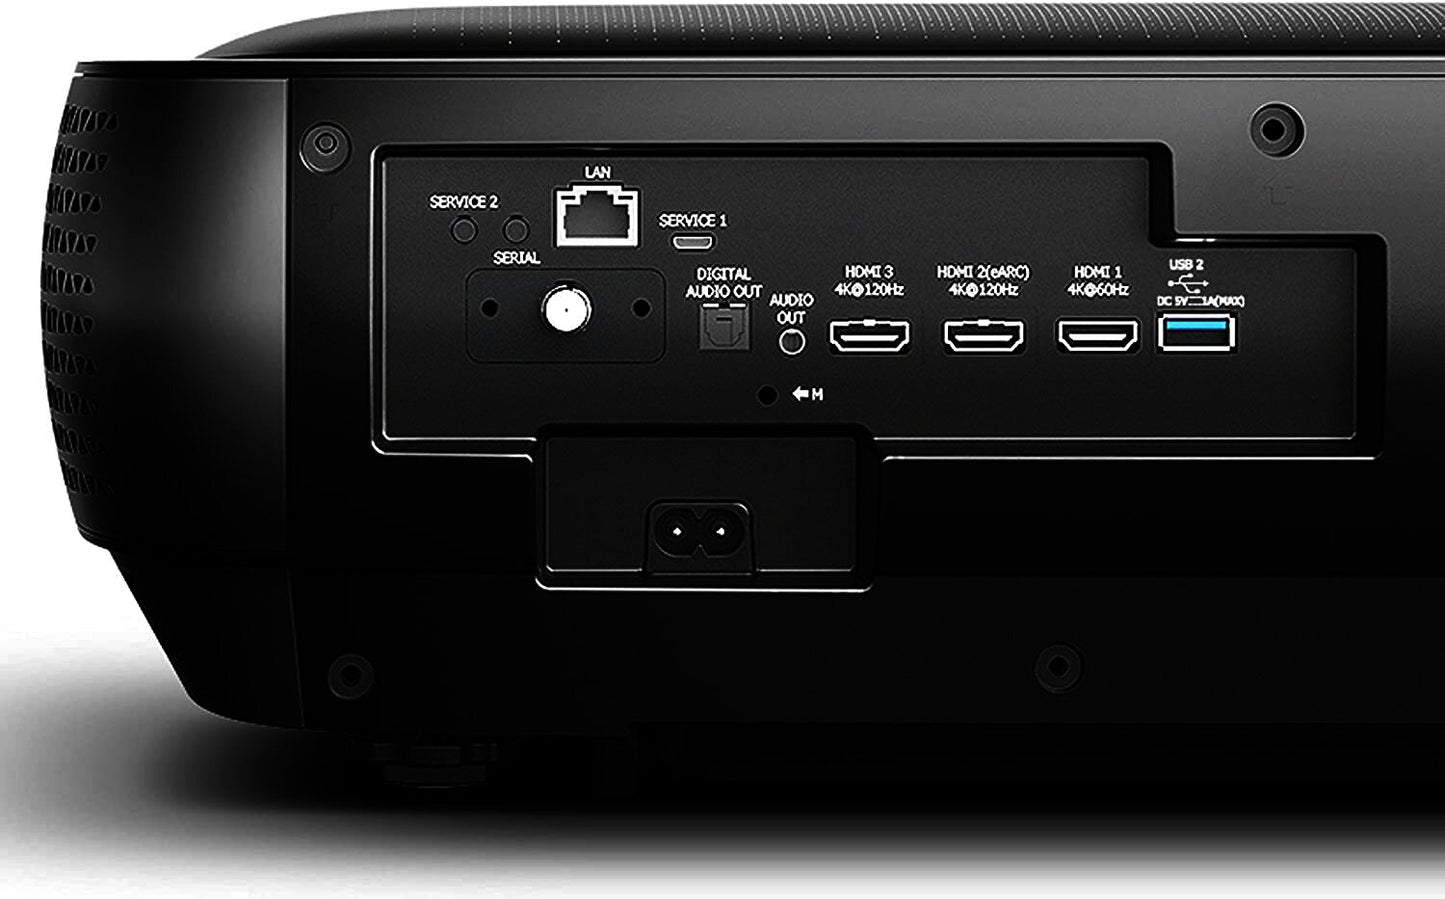 Hisense 120 Inch L9 Series Laser 4K HDR Smart TV - HISTV120L9G  - TV 120LASER